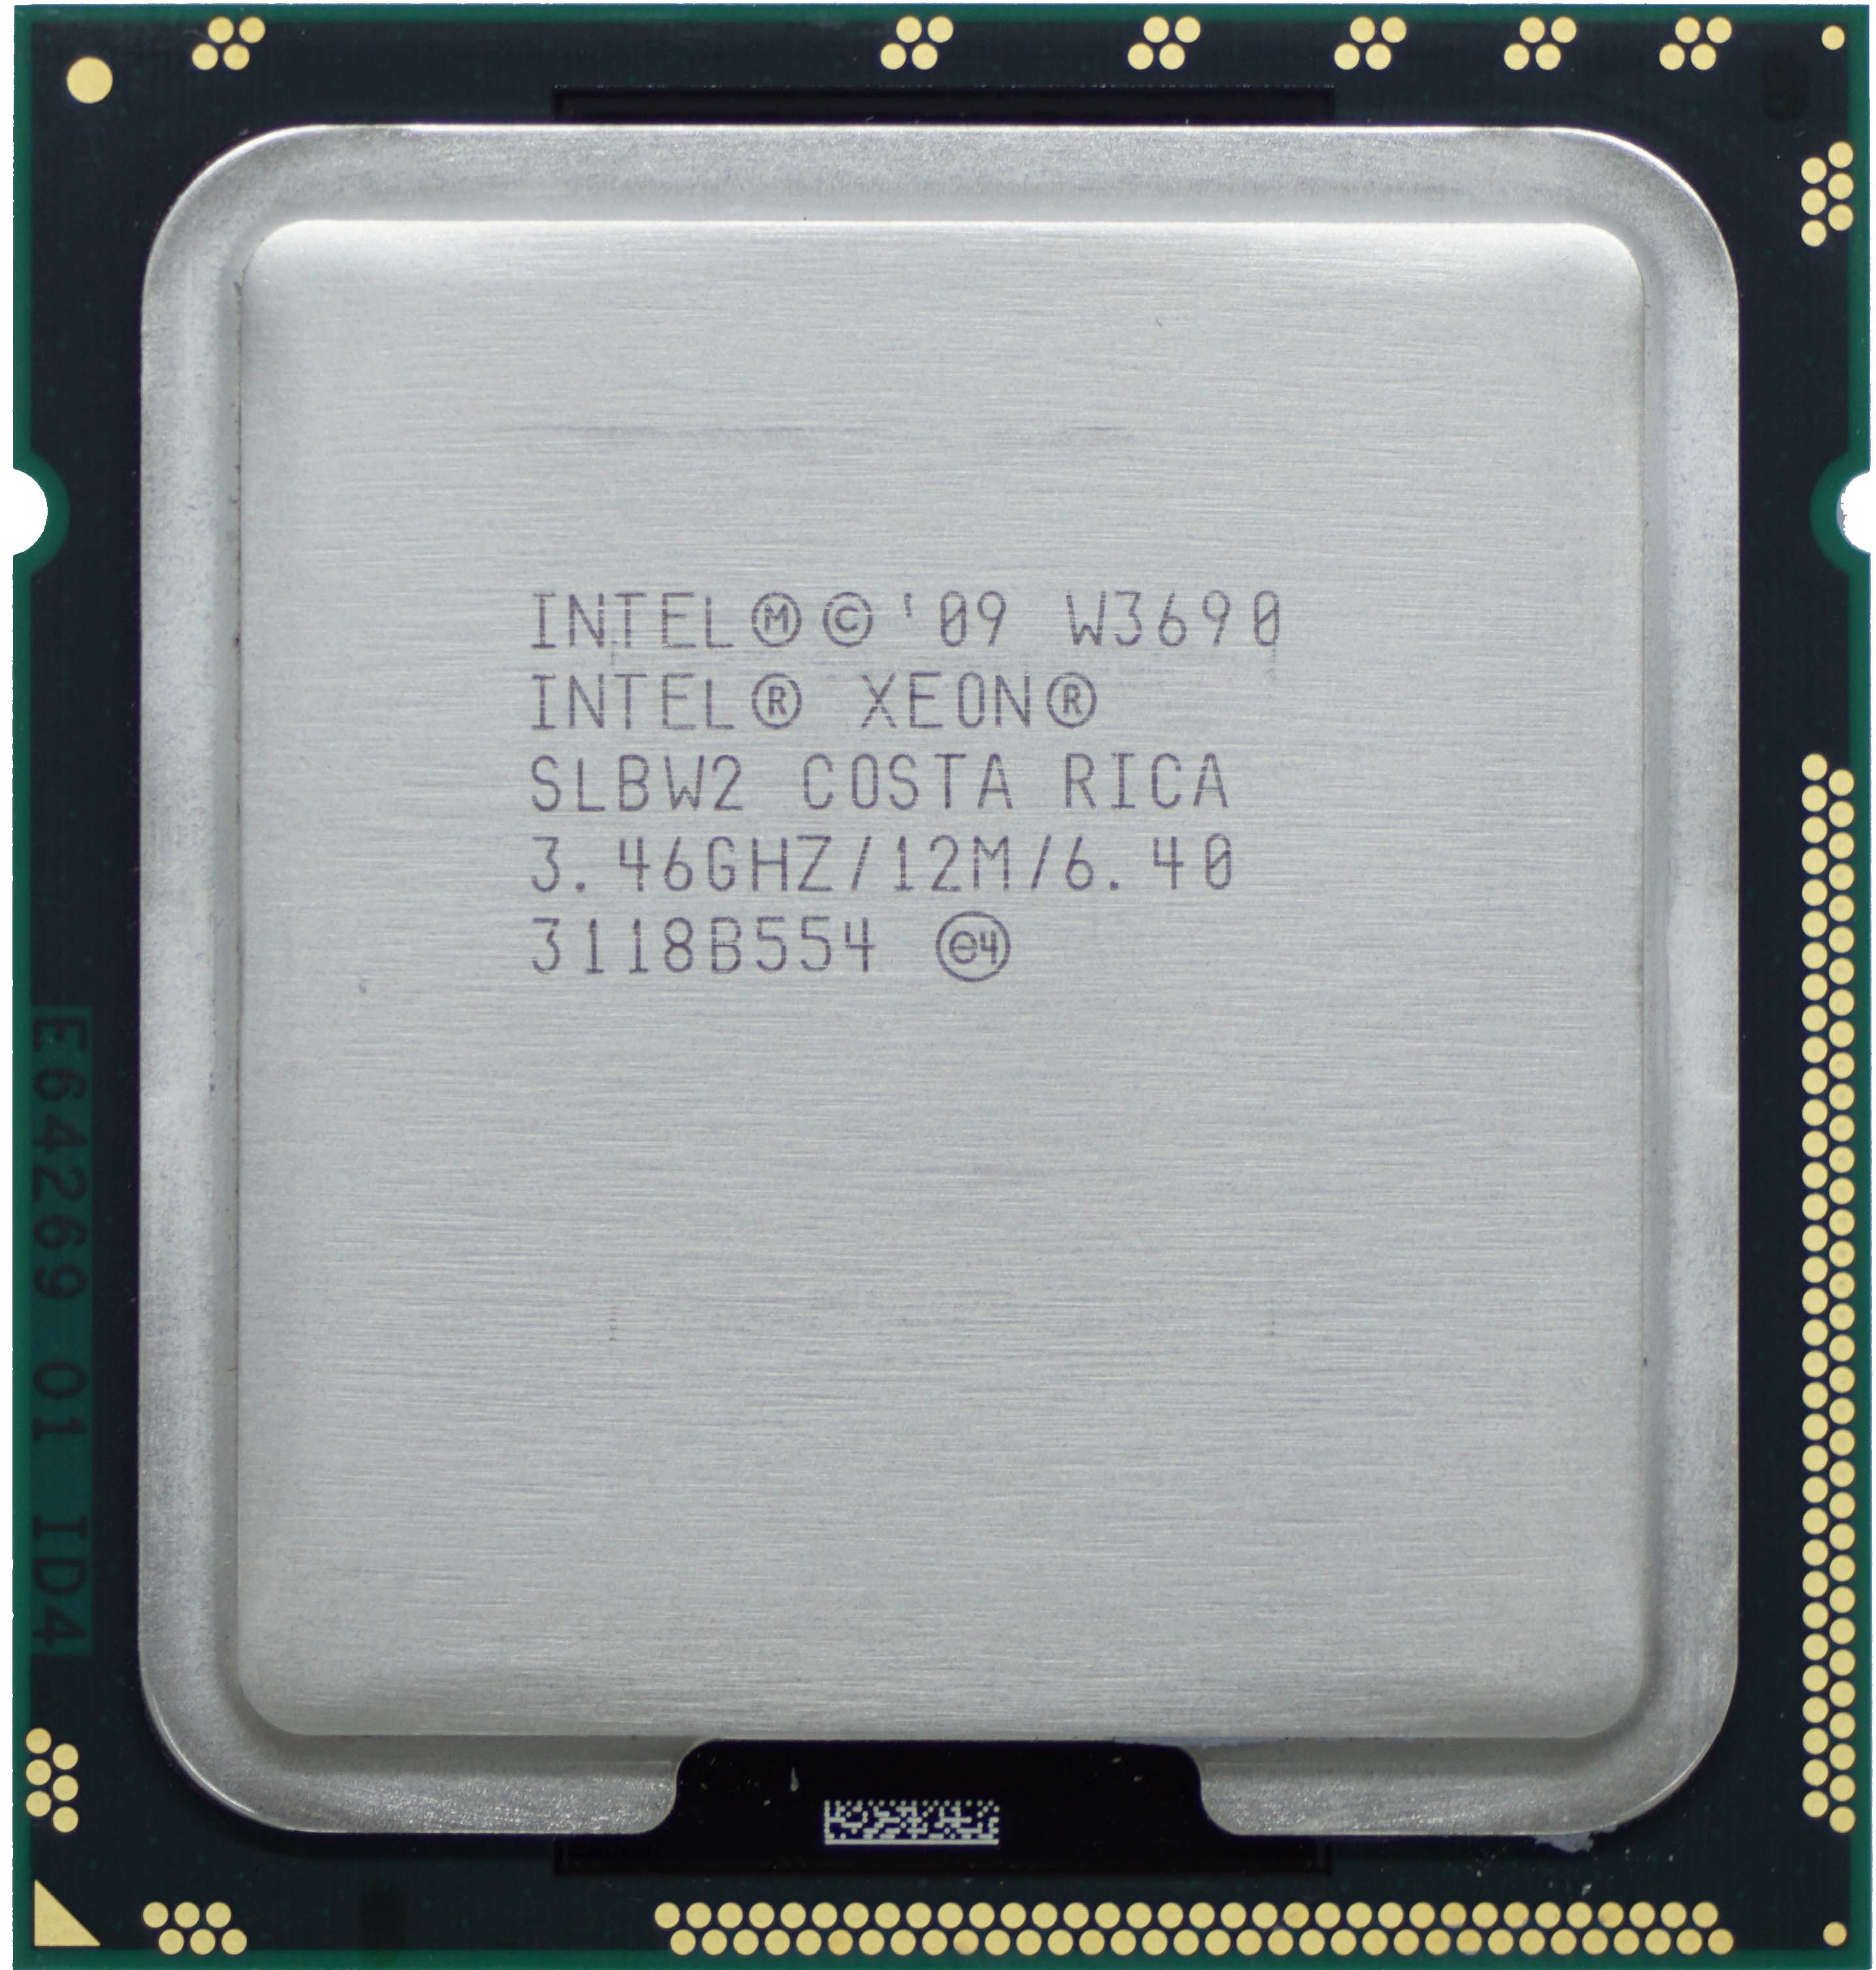 Intel Xeon W3690 (SLBW2) 6-Core 3.46GHz LGA1366 12MB 130W CPU Processor